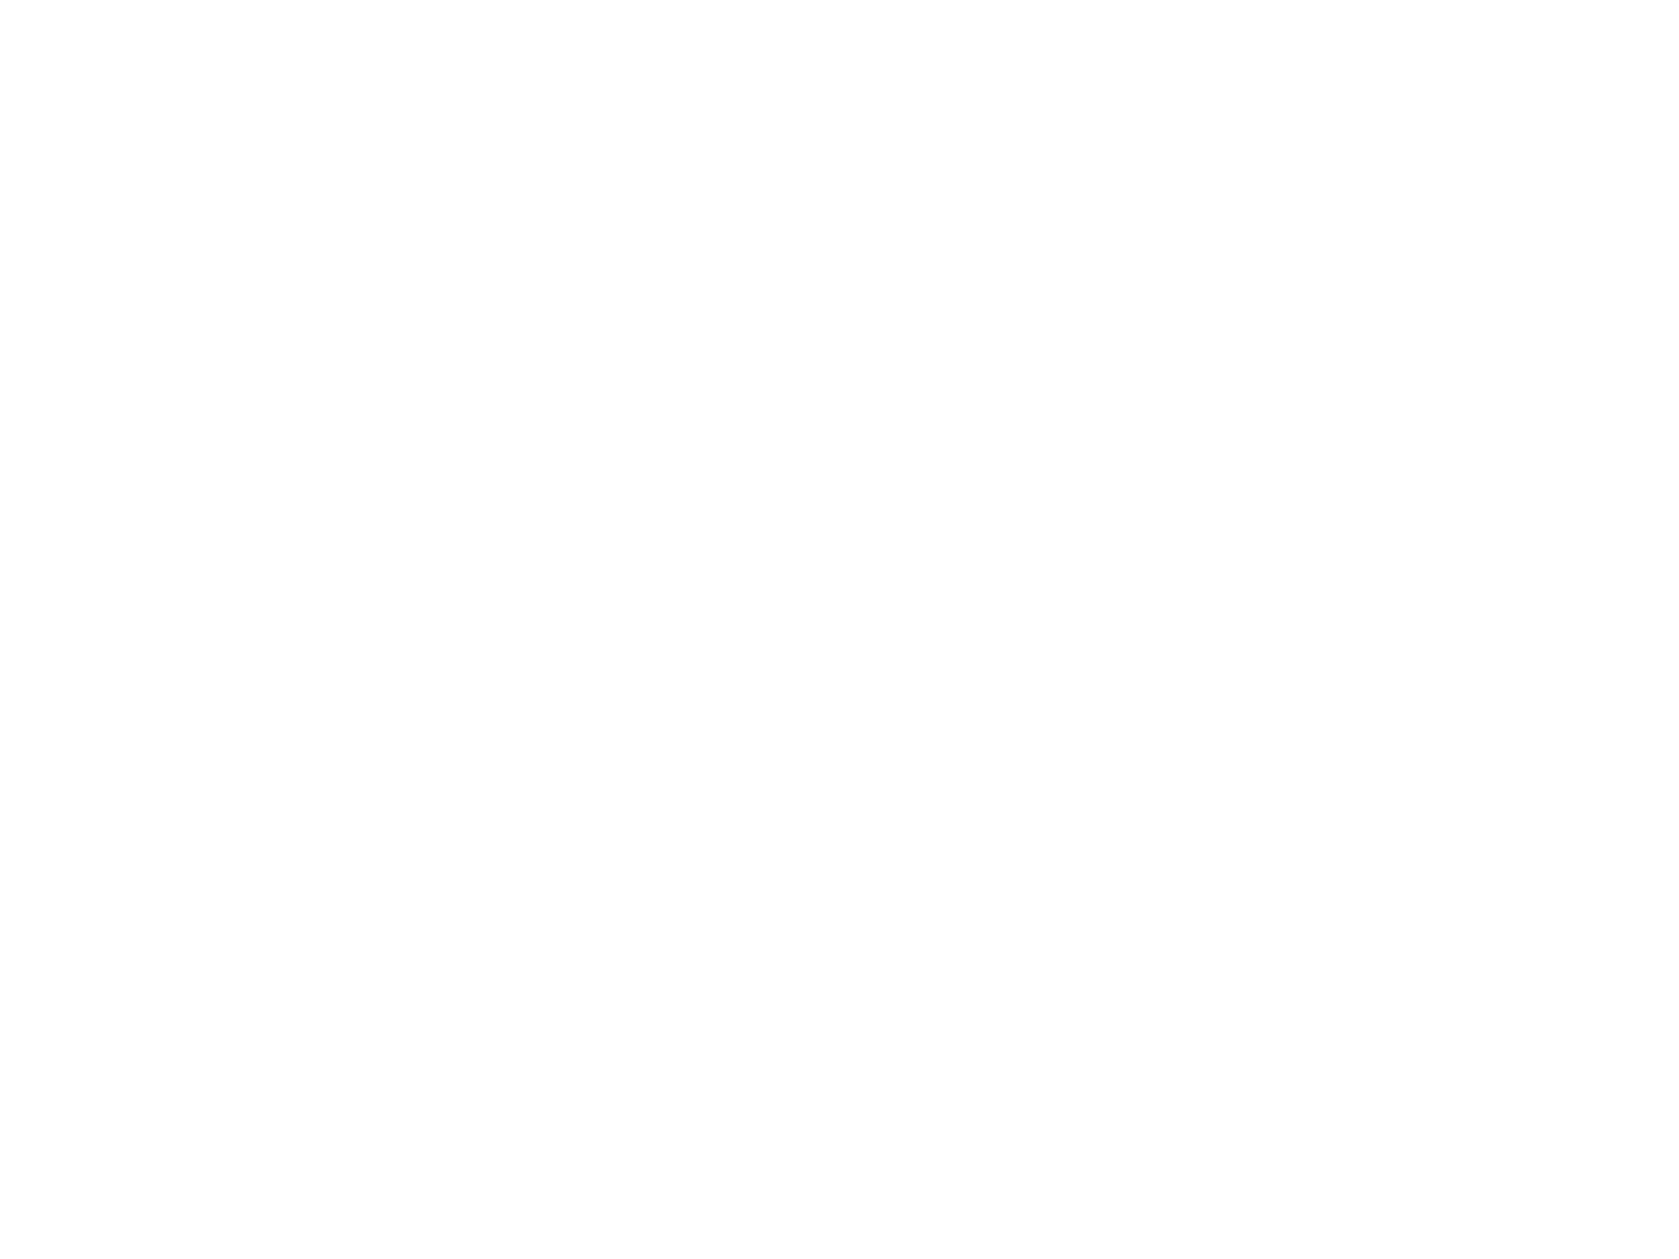 Ламповые ретро-часы на газоразрядных индикаторах ИН-12. Корпус изготовлен из массива дуба и украшен темным шпоном морёного эвкалипта. Ламповые часы - оригинальный подарок мужчине на день рождения